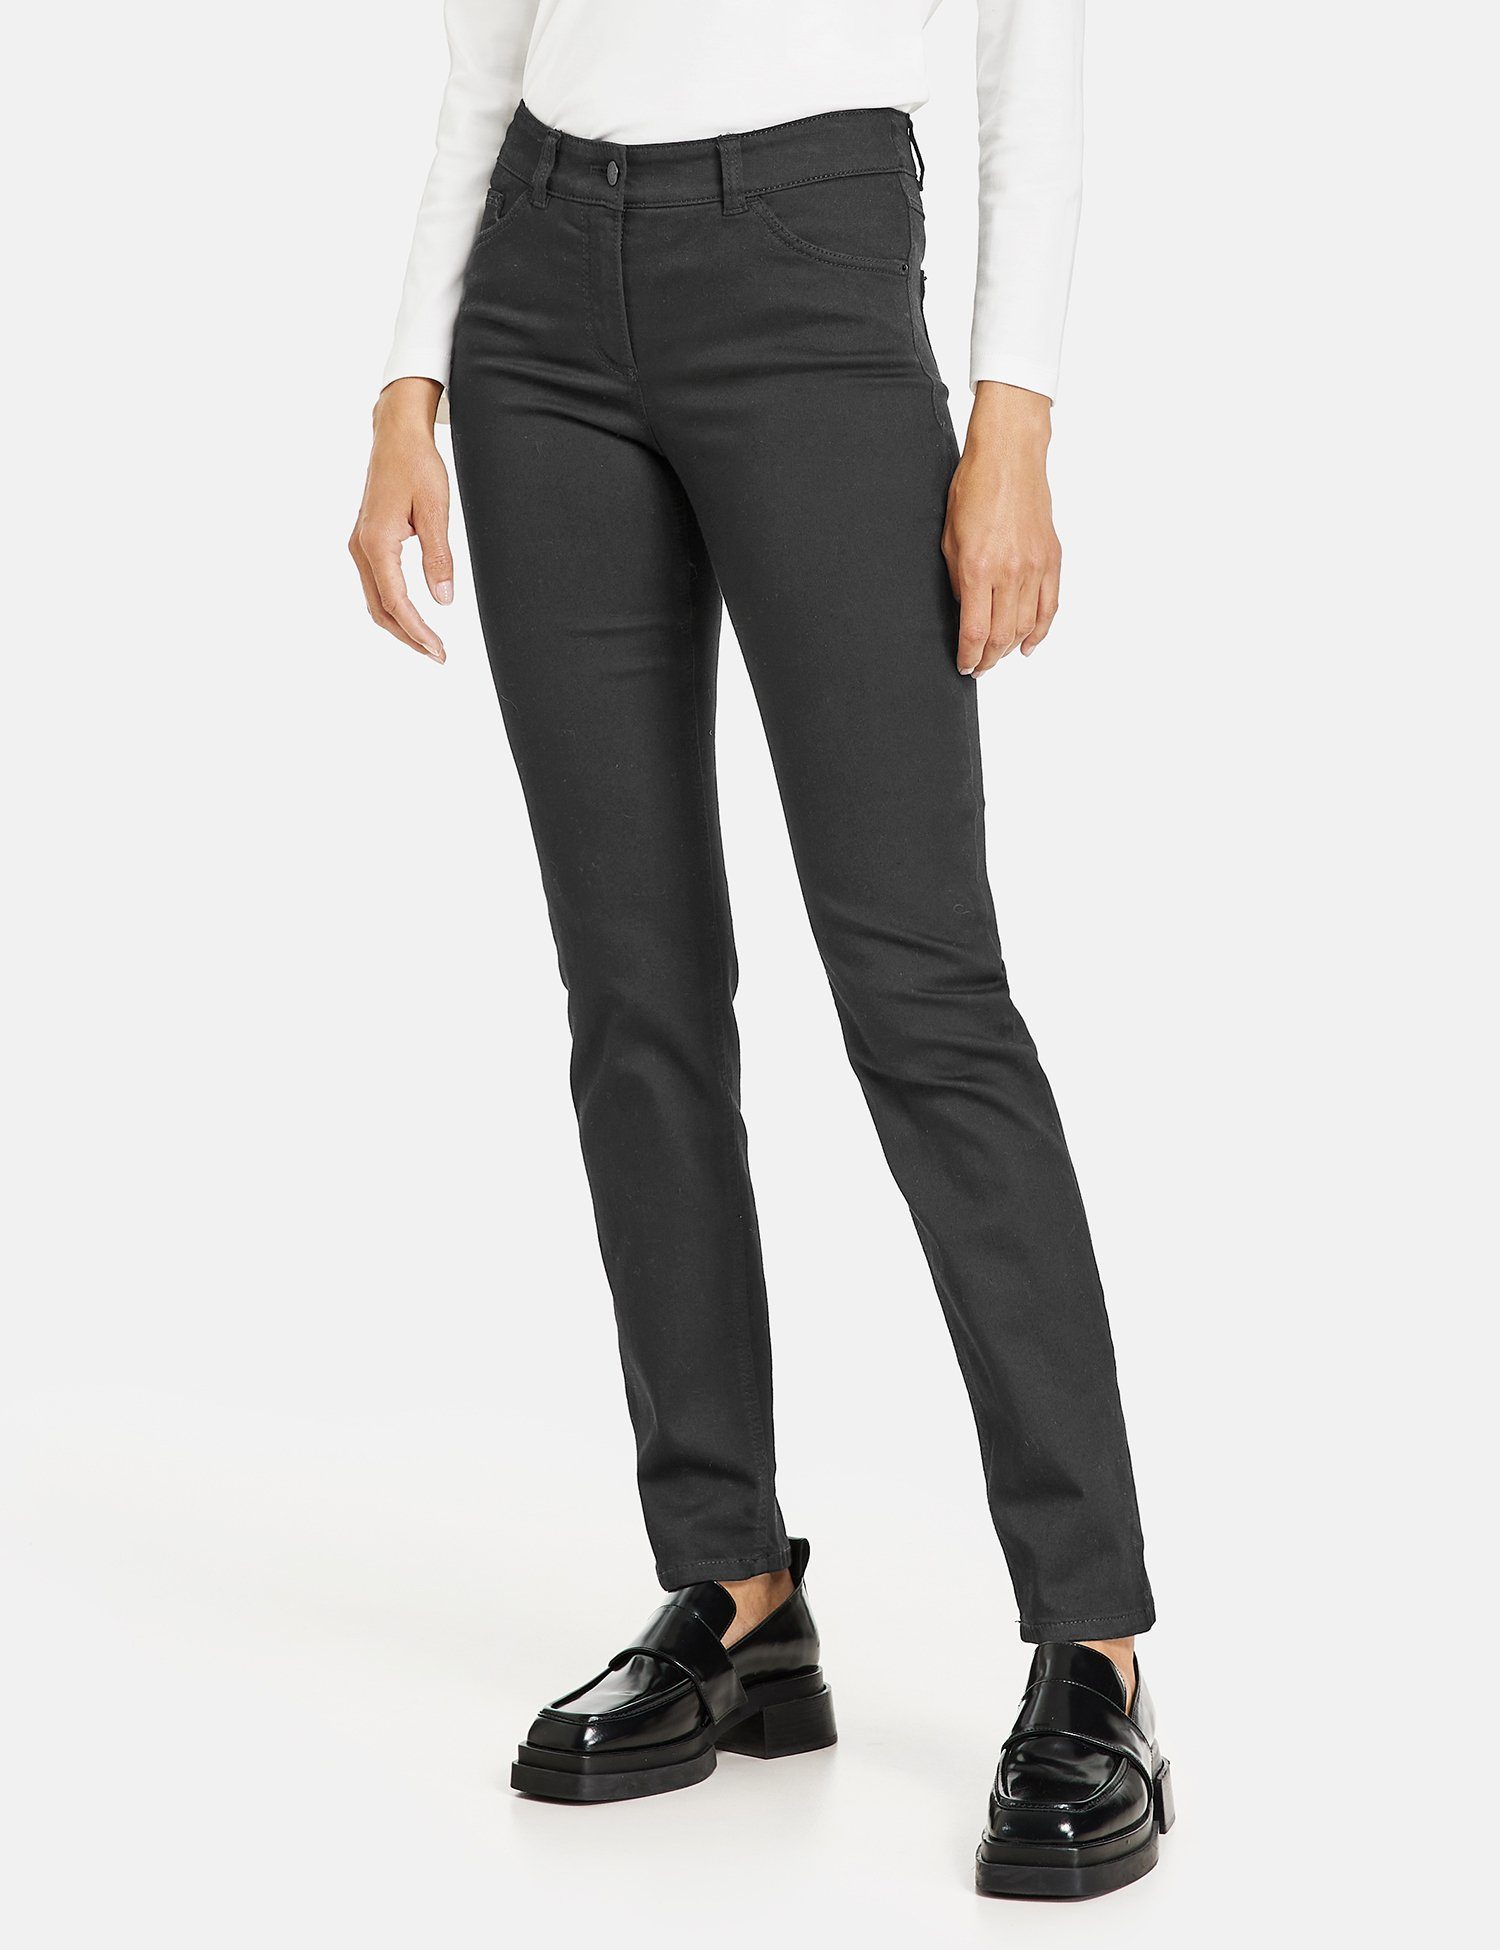 WEBER Jeans 5-Pocket GERRY Black Stretch-Jeans Slimfit Denim Best4me Black